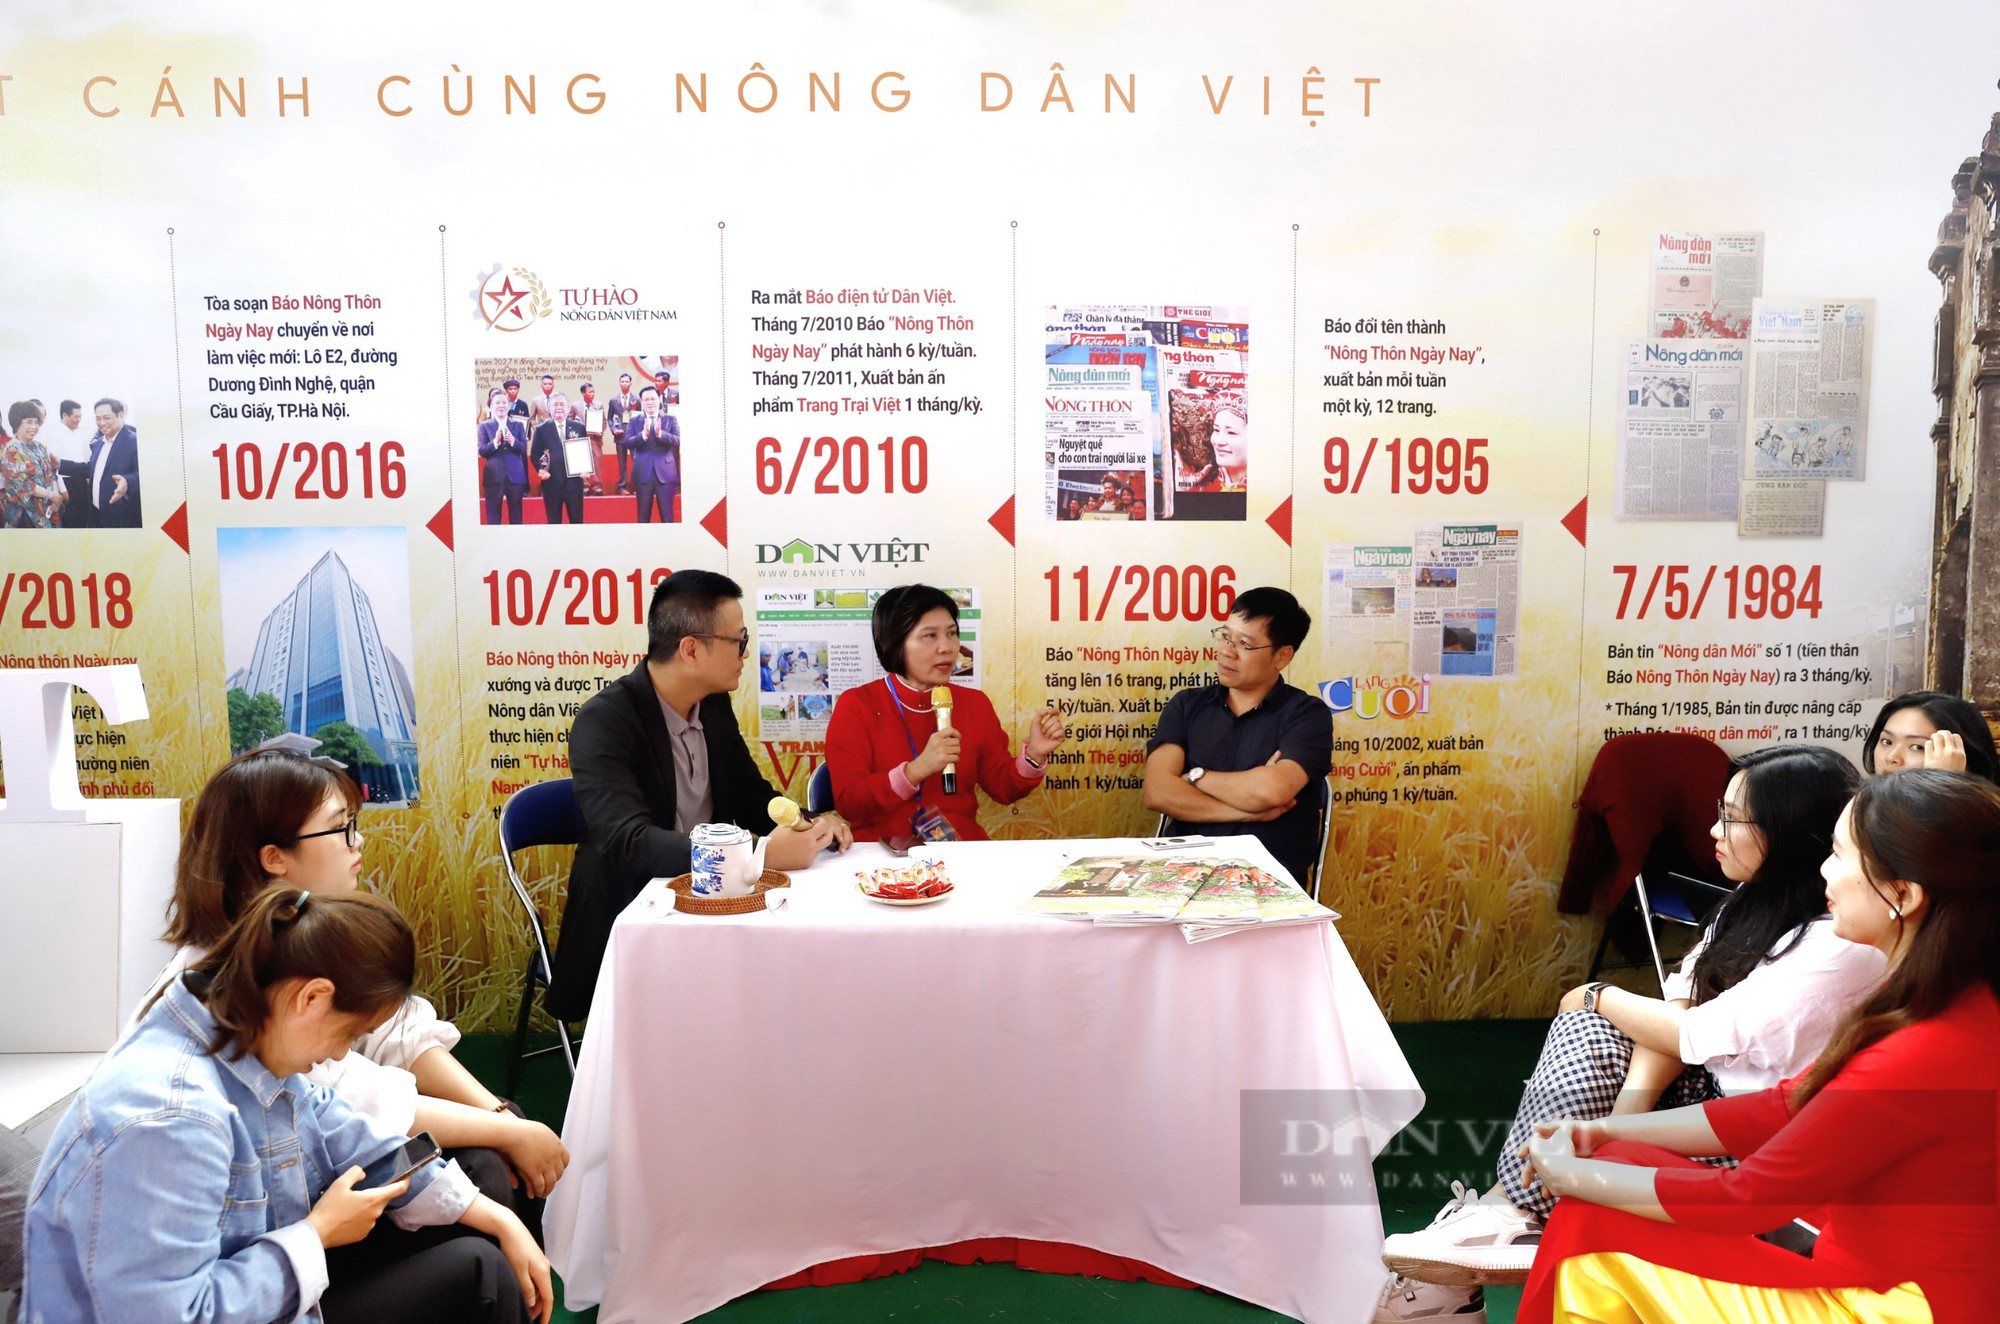 Giới trẻ hào hứng học nghề qua Talkshow “Báo chí kiến tạo” do báo NTNN/Dân Việt tổ chức - Ảnh 1.